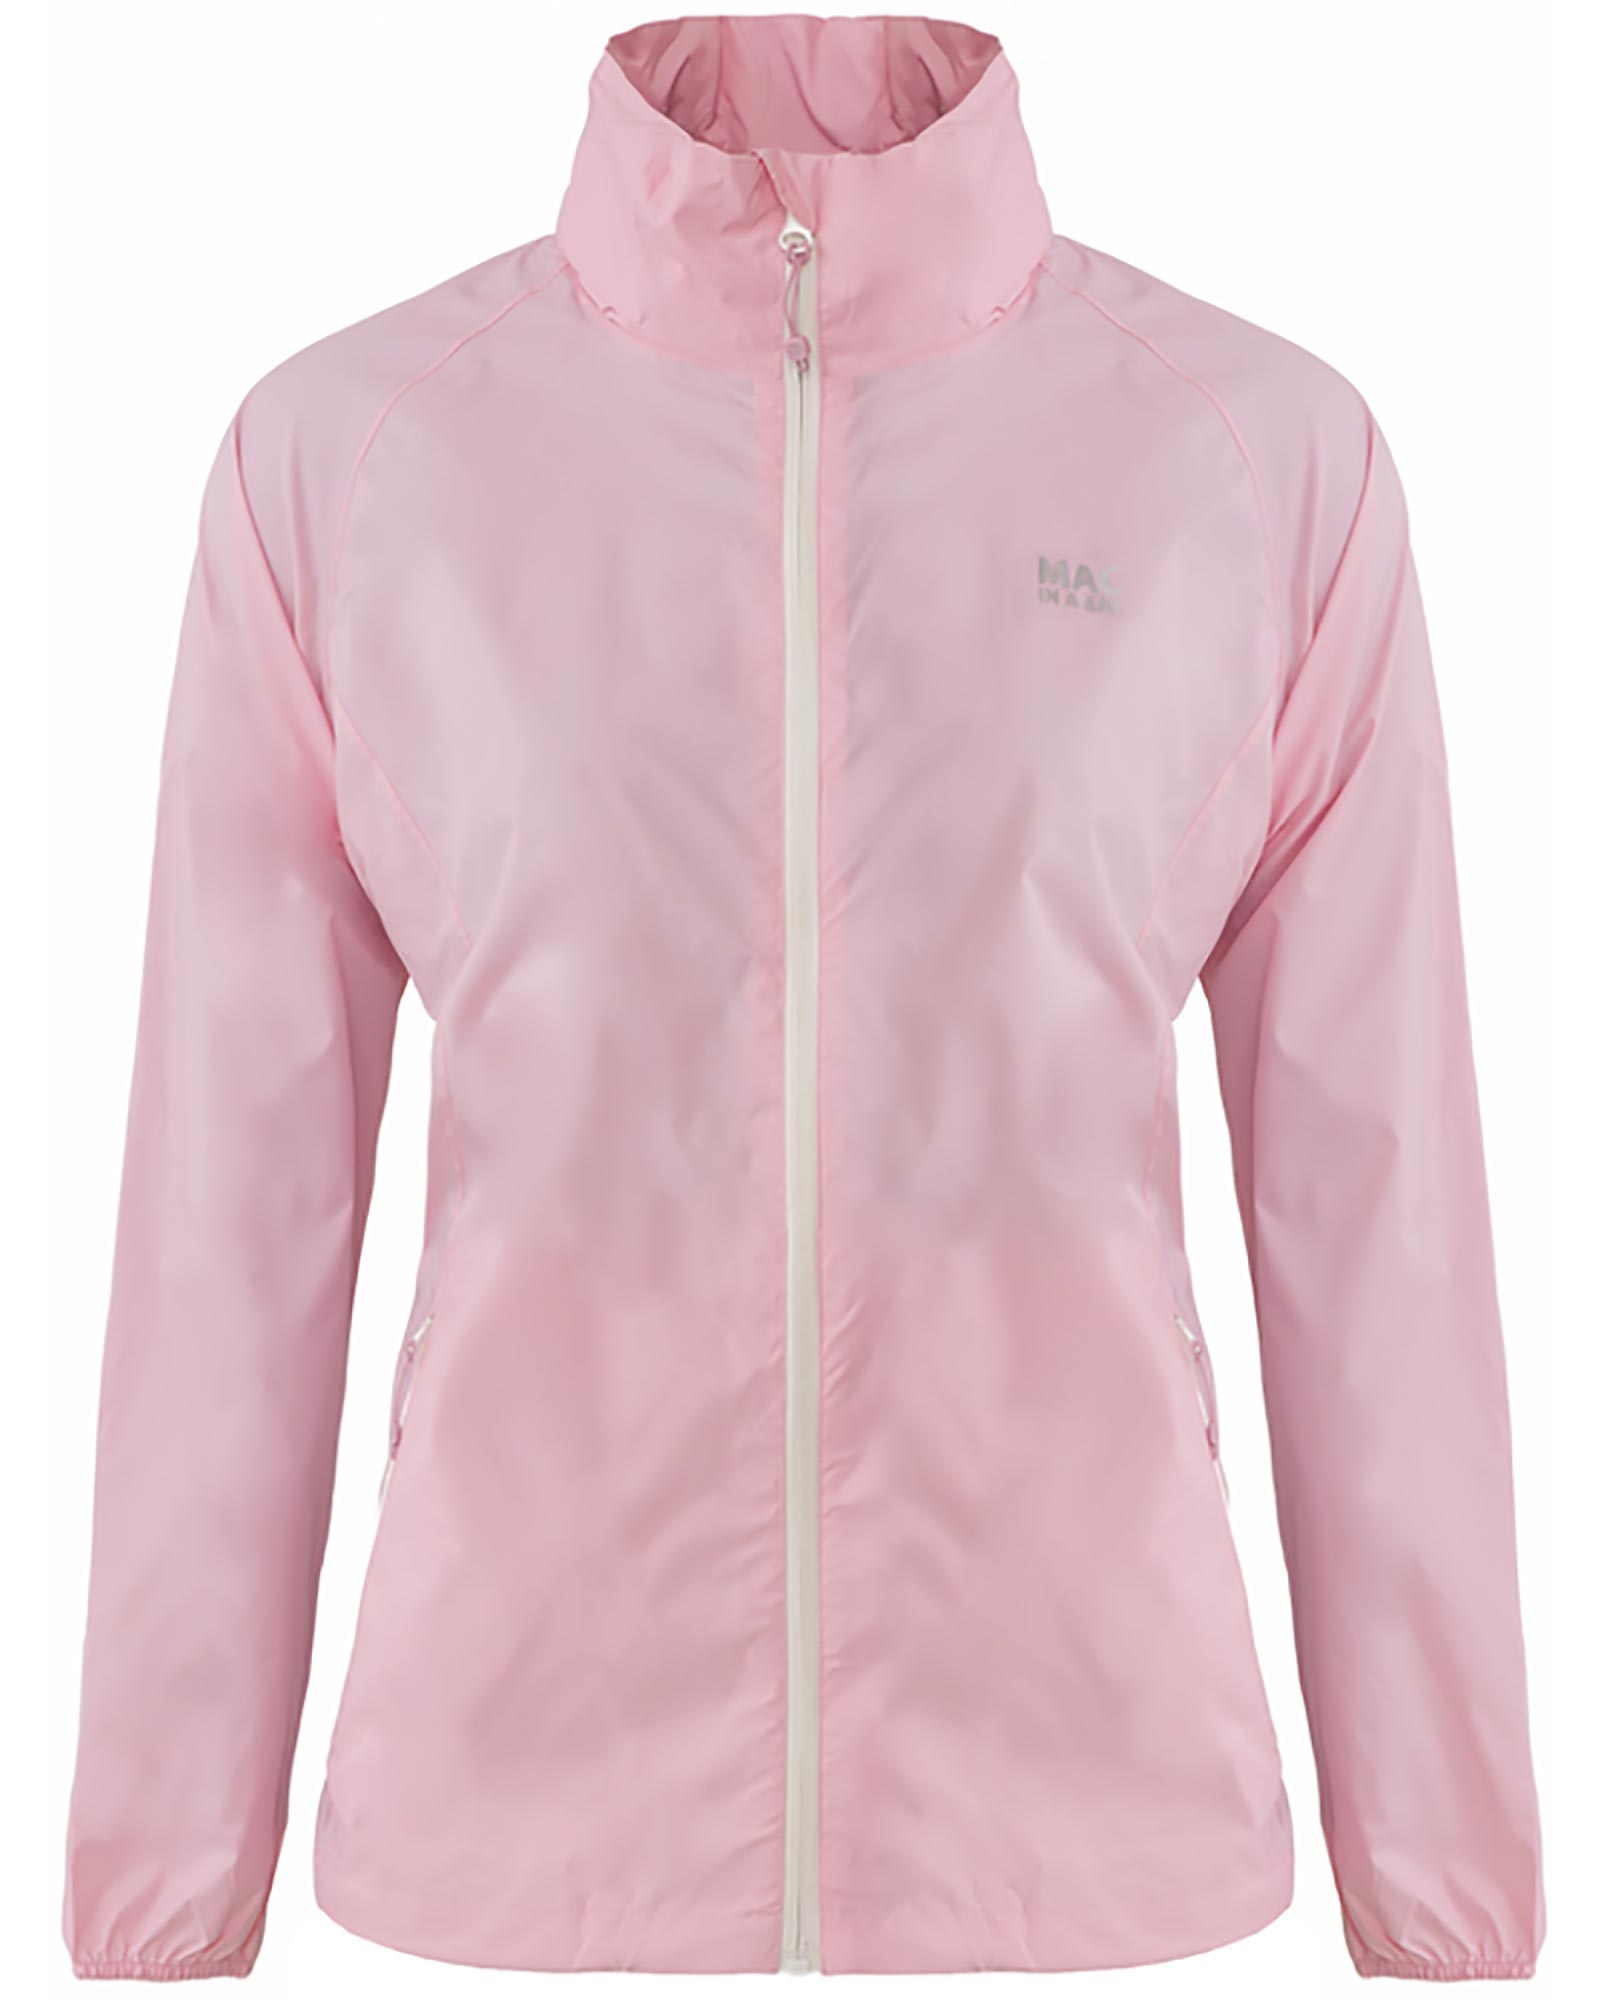 Target Dry Mac in a Sac Adult Packable Waterproof Jacket - Rose Pink L